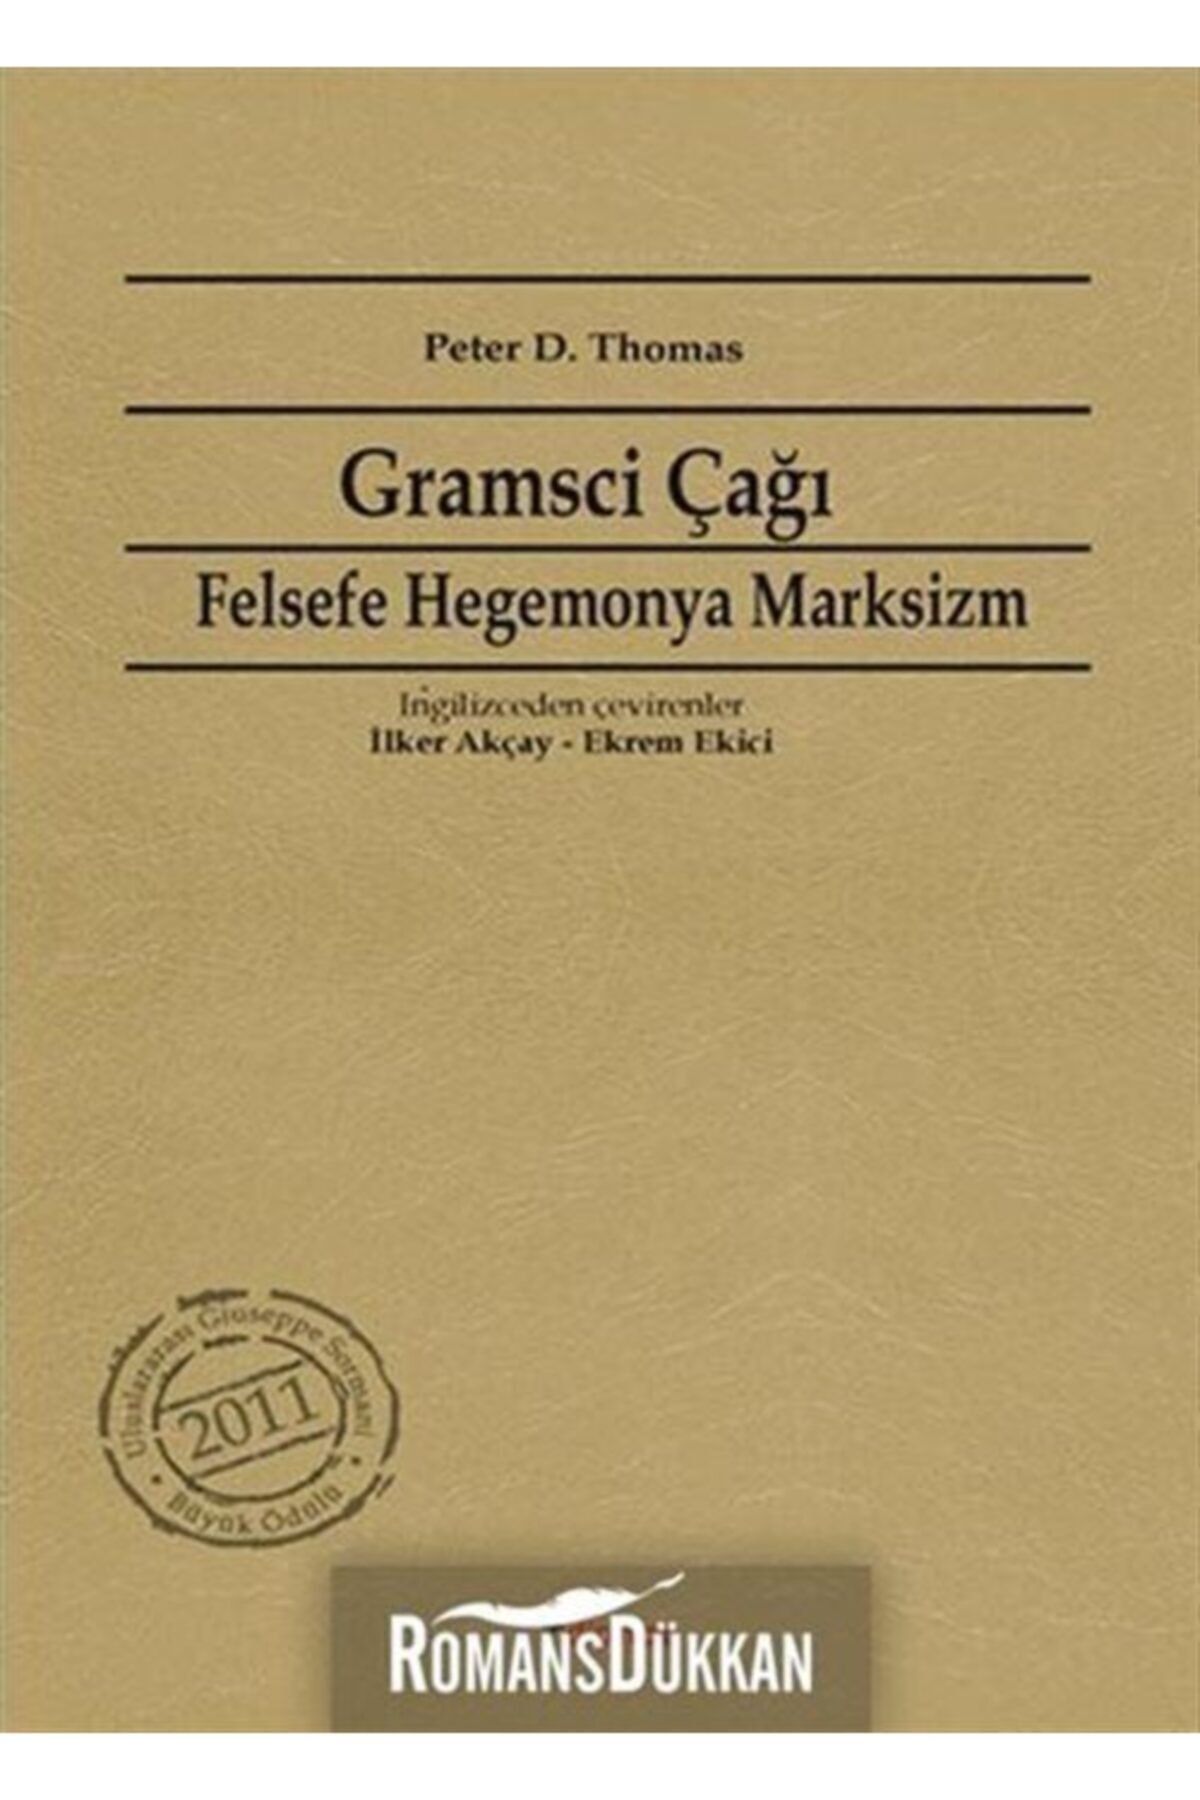 Dipnot Yayınları Gramsci Çağı & Felsefe, Hegemonya, Marksizm